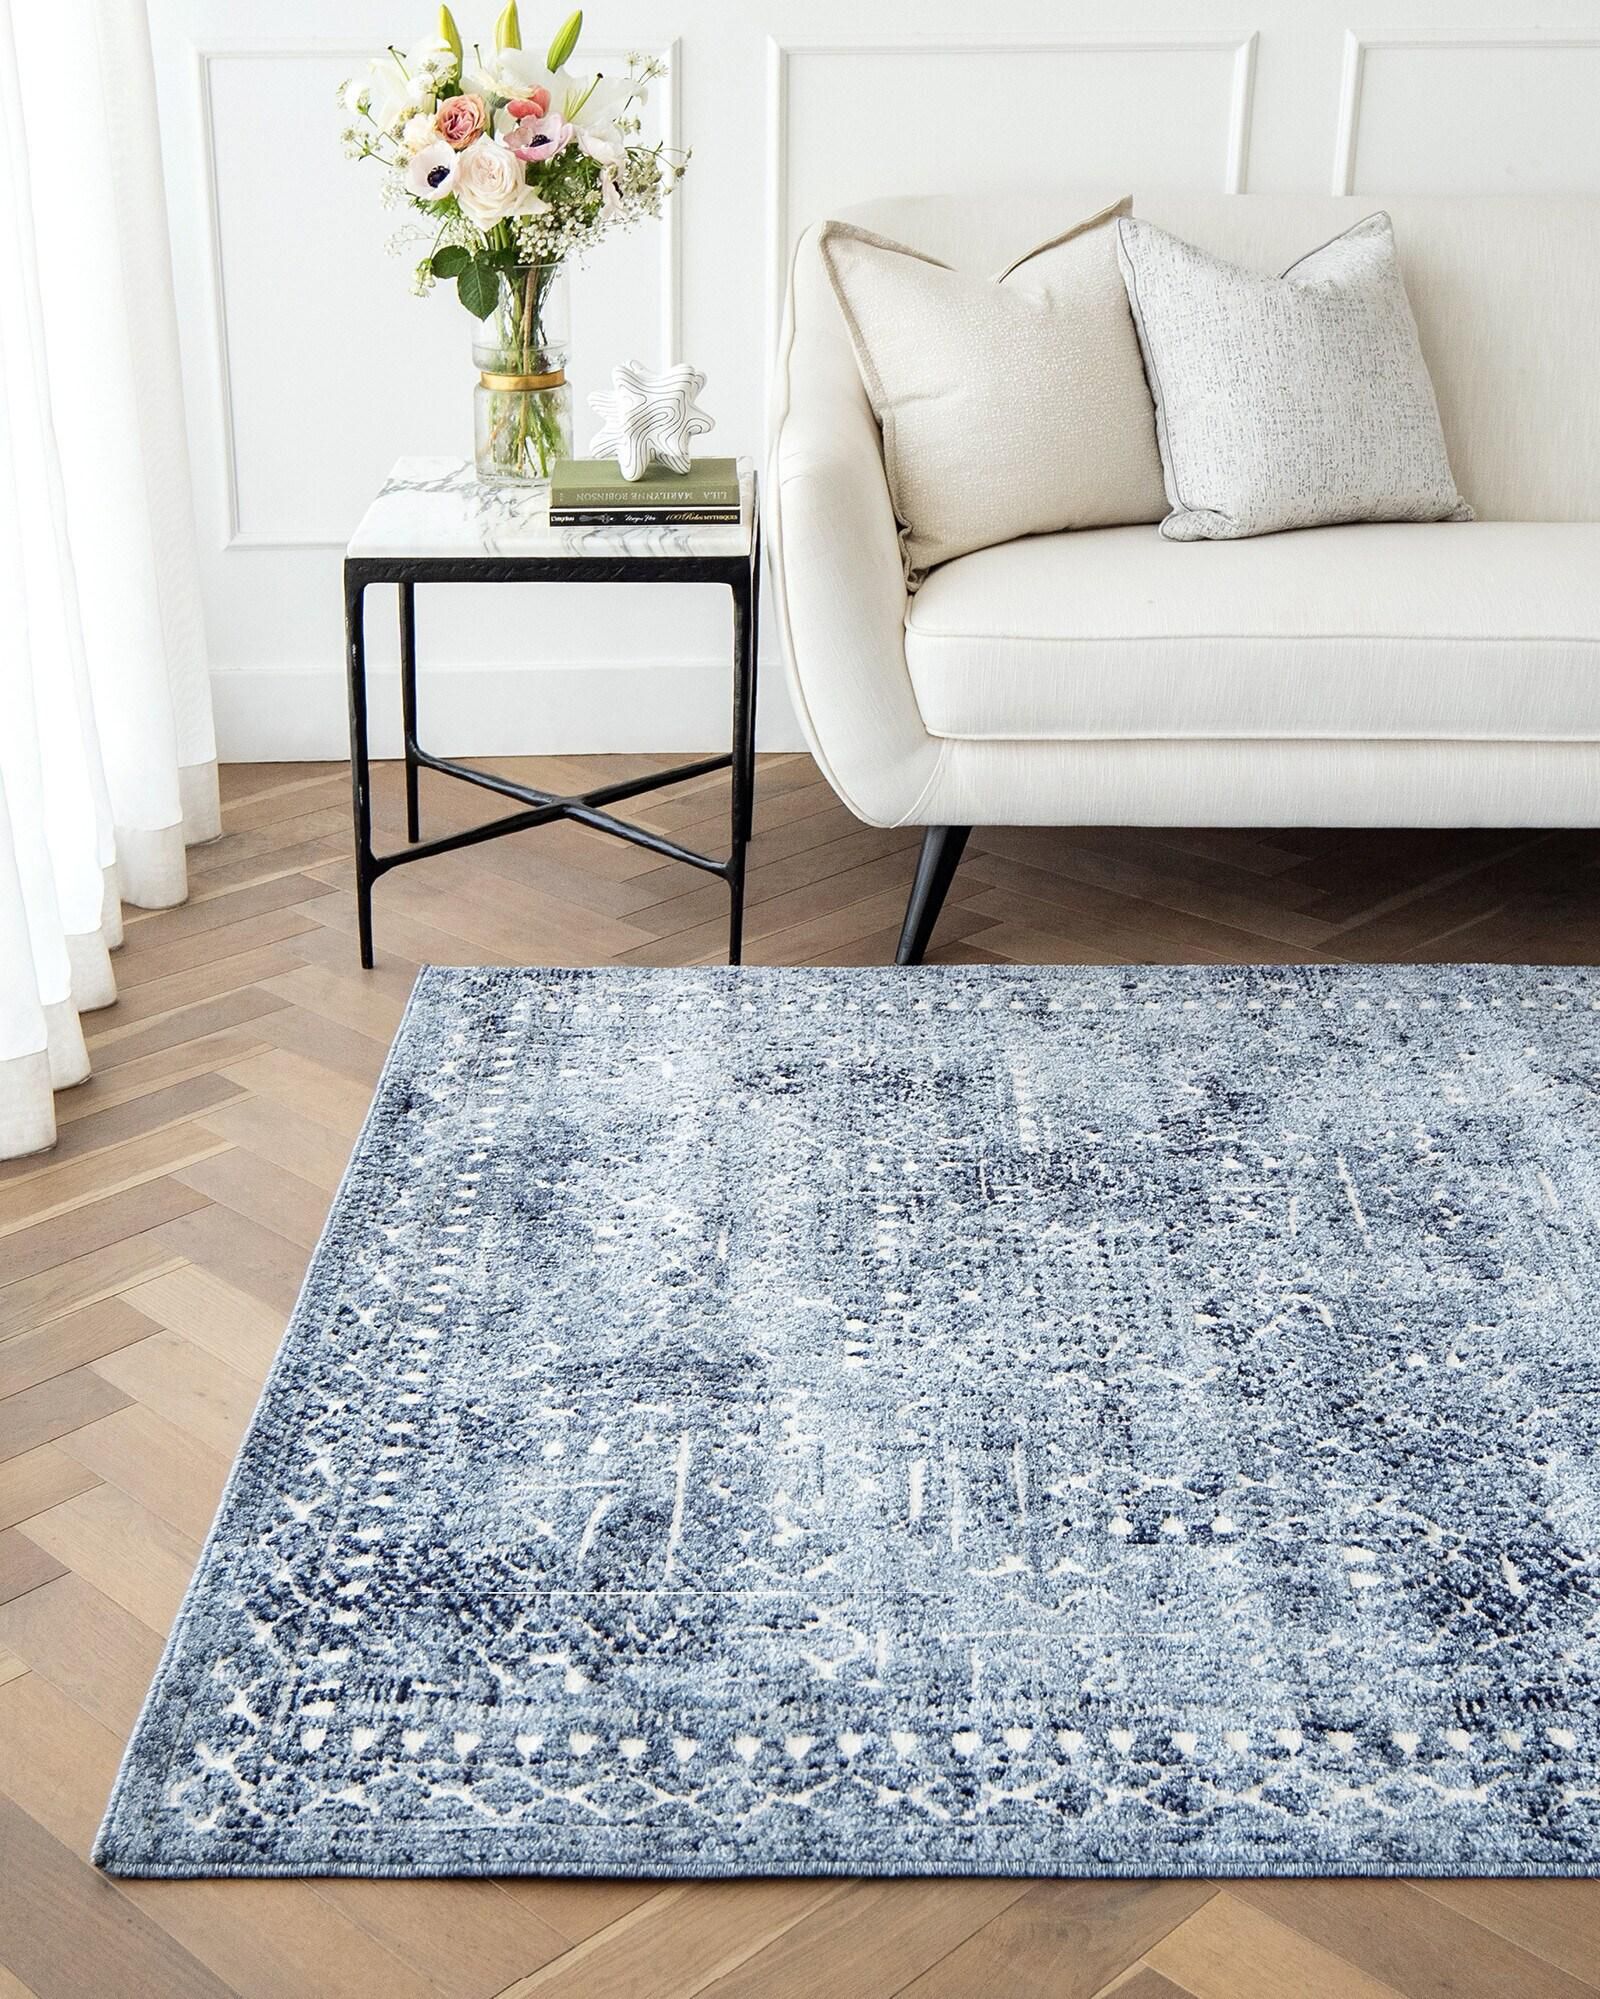 Renzo Ashton 180 x 120 cm Carpet Knot Home Designer Rug for Bedroom Living Dining Room Office Soft Non-slip Area Textile Decor